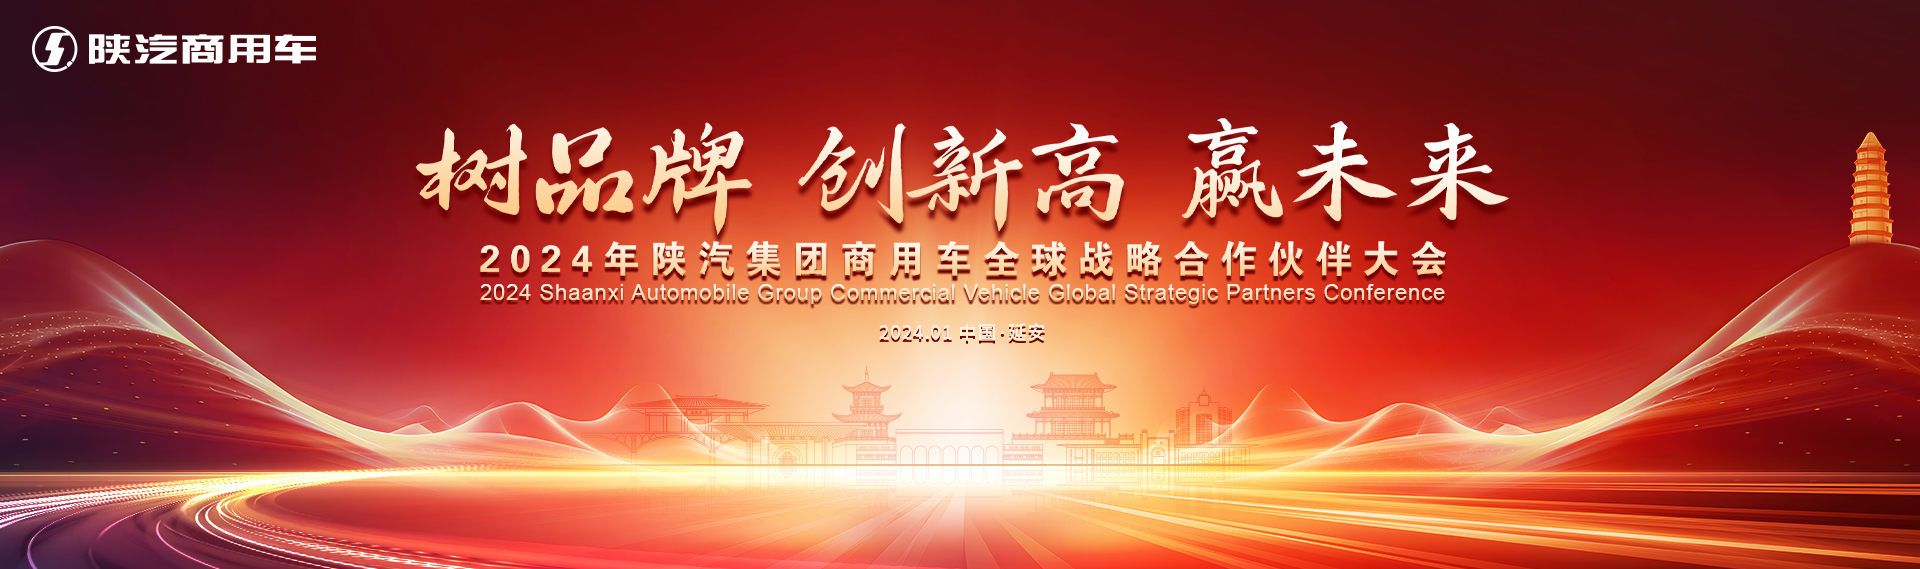 2024年陕汽集团商用车全球战略合作伙伴大会